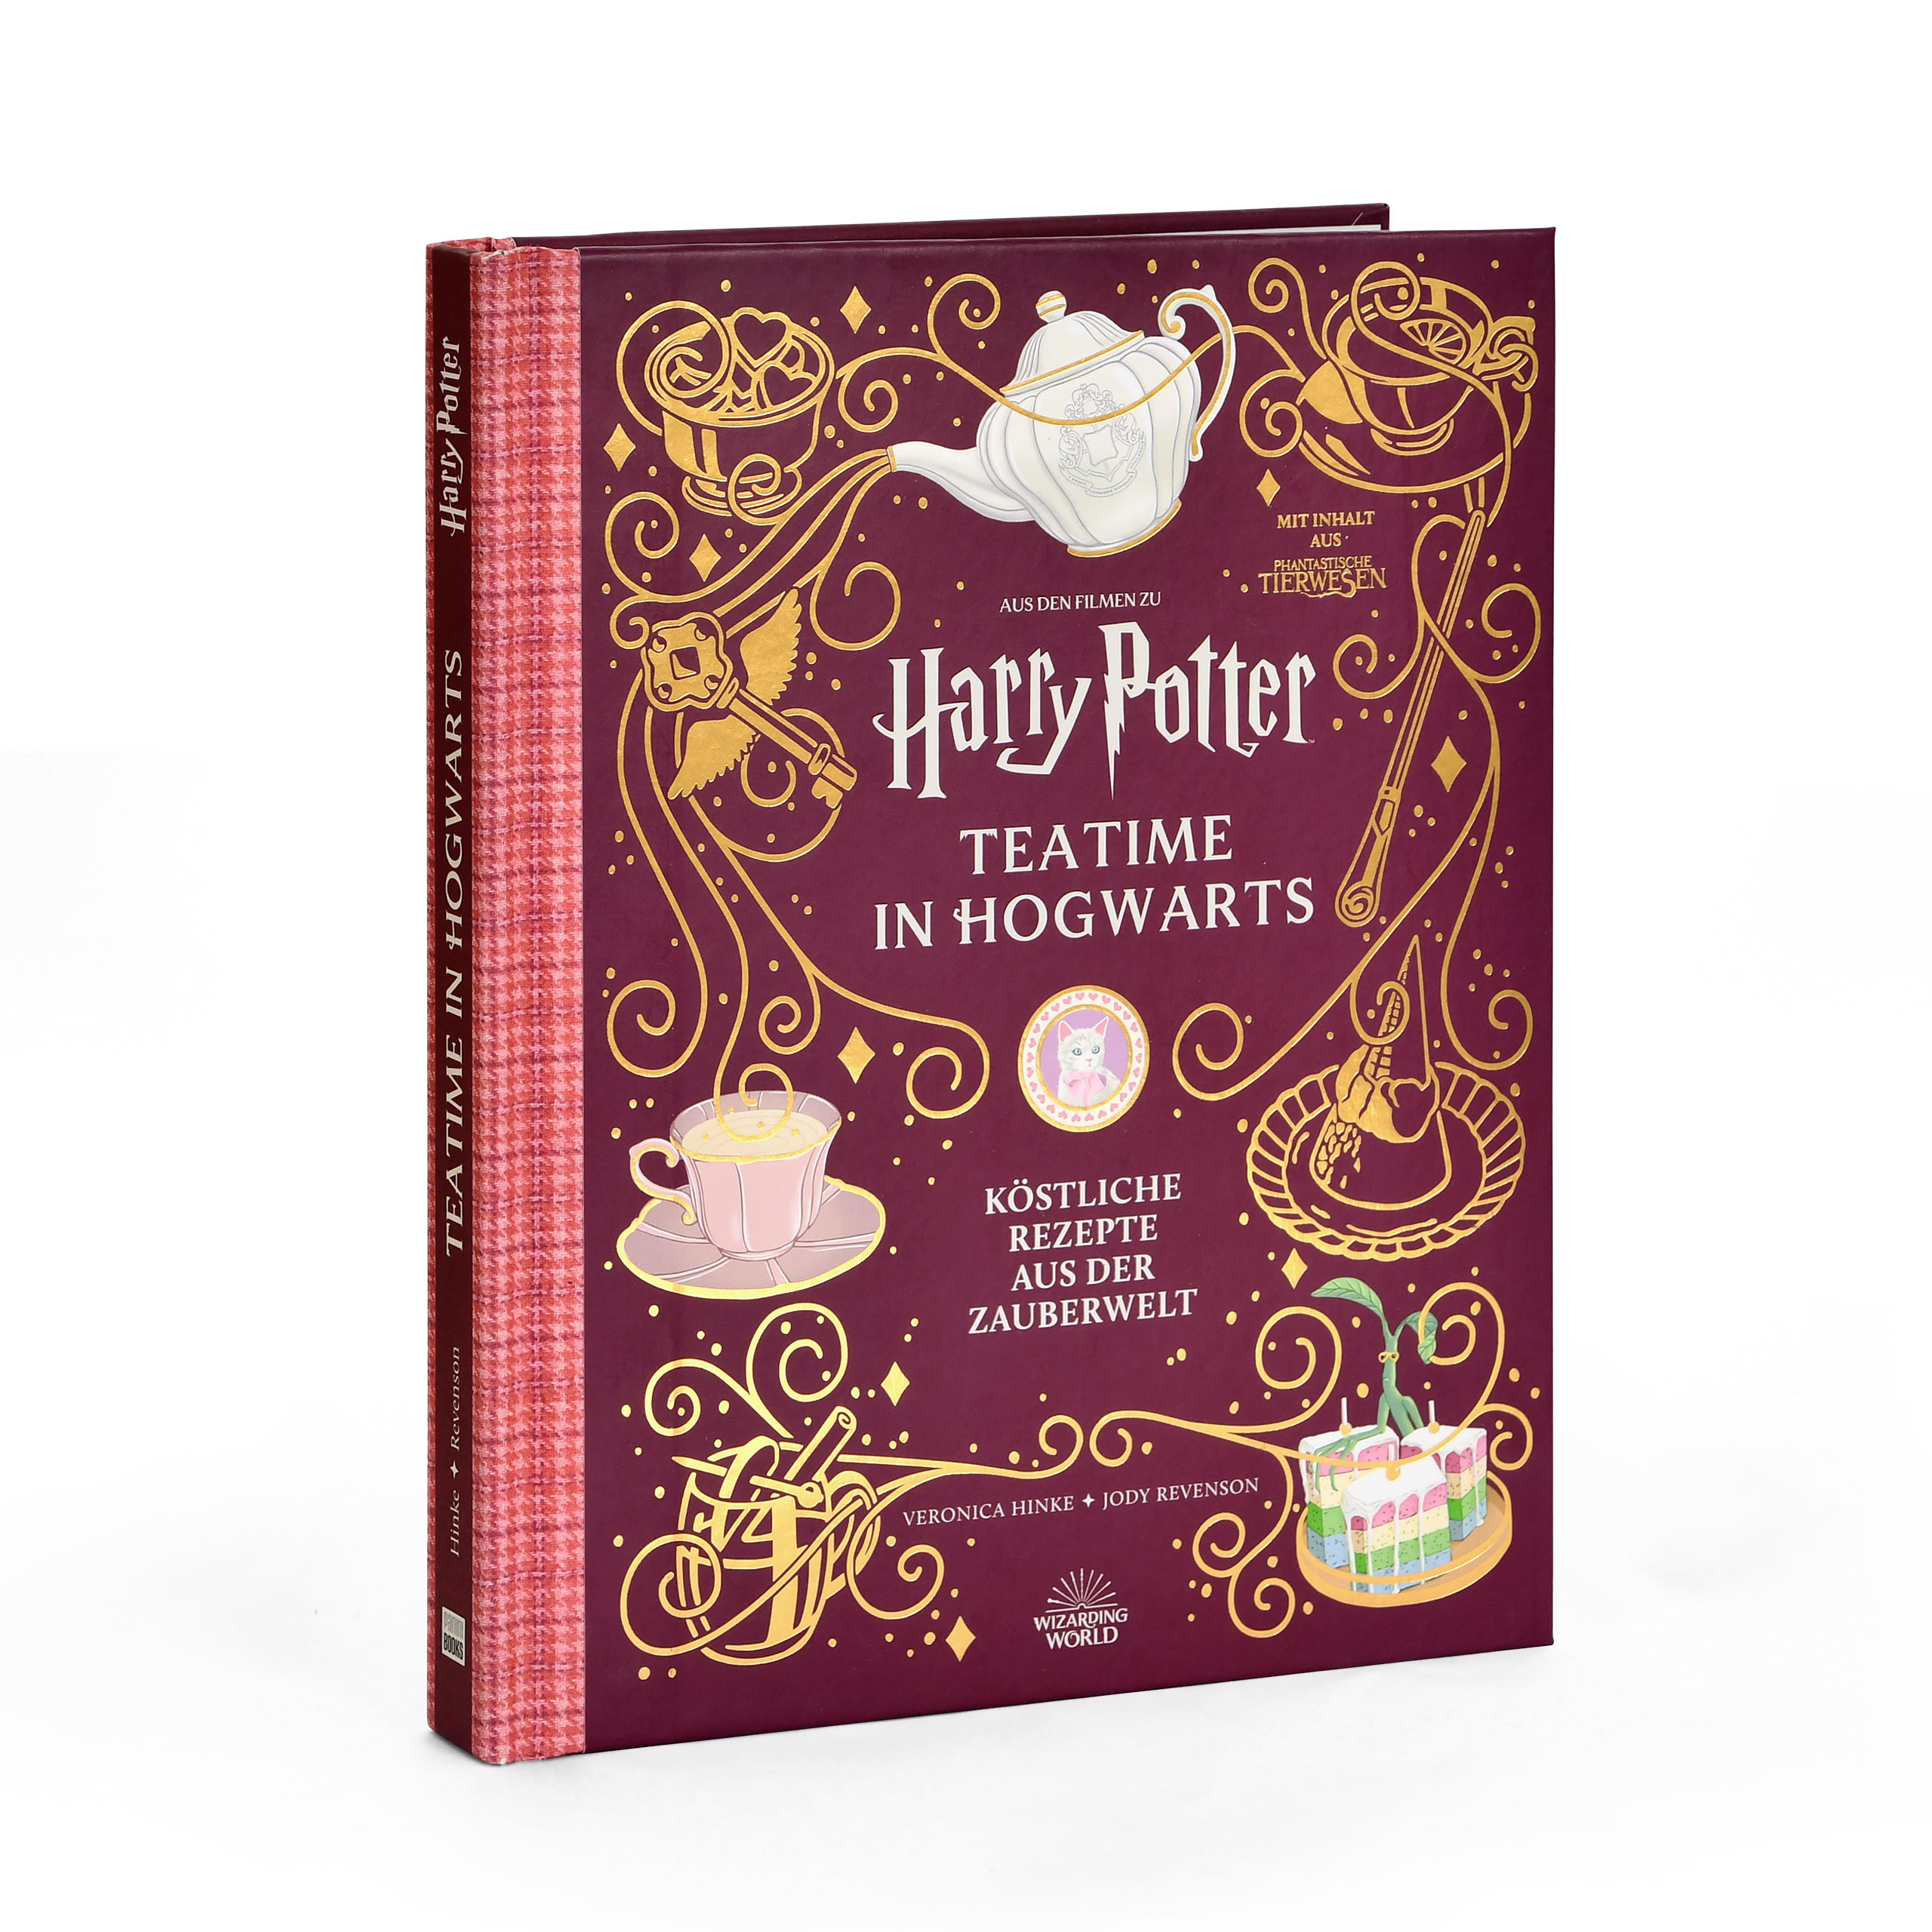 Harry Potter - Teatime in Hogwarts - Köstliche Rezepte aus der Zauberwelt